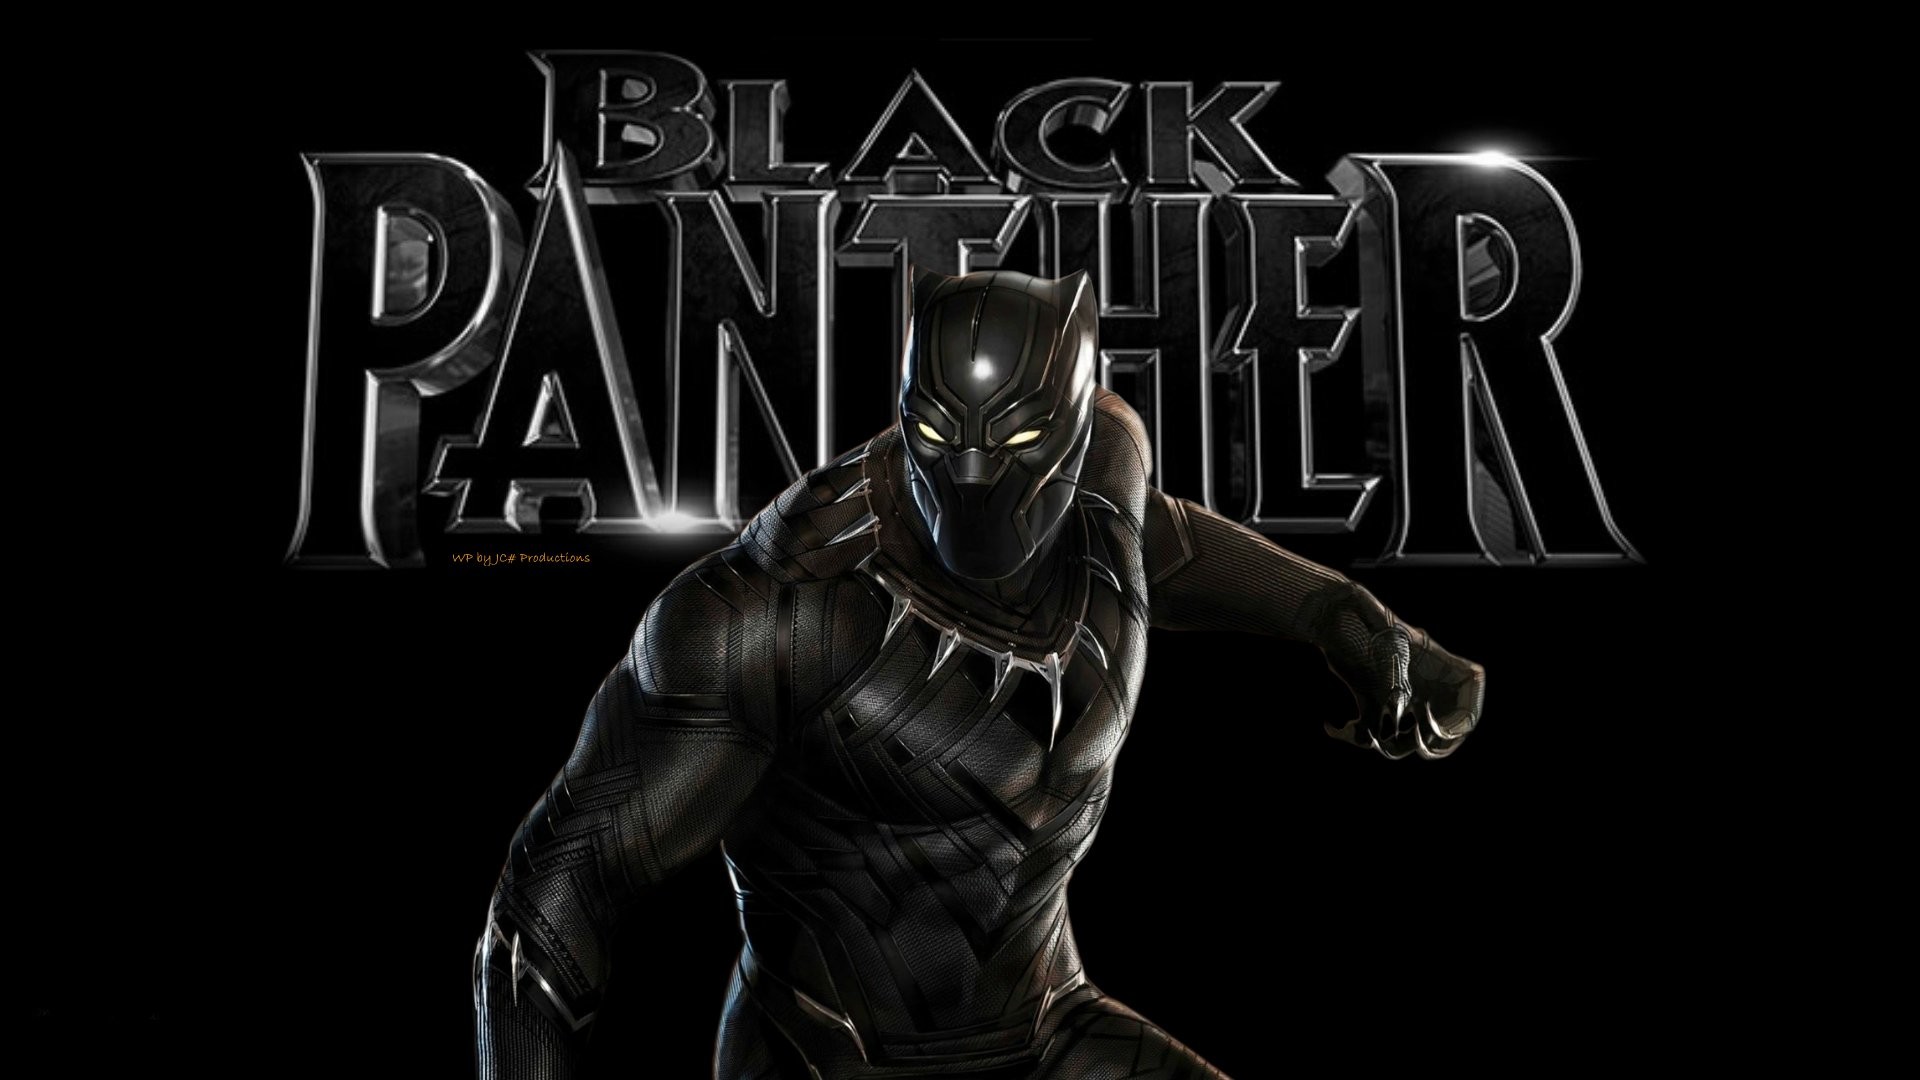 black panther 1080p full movie download free